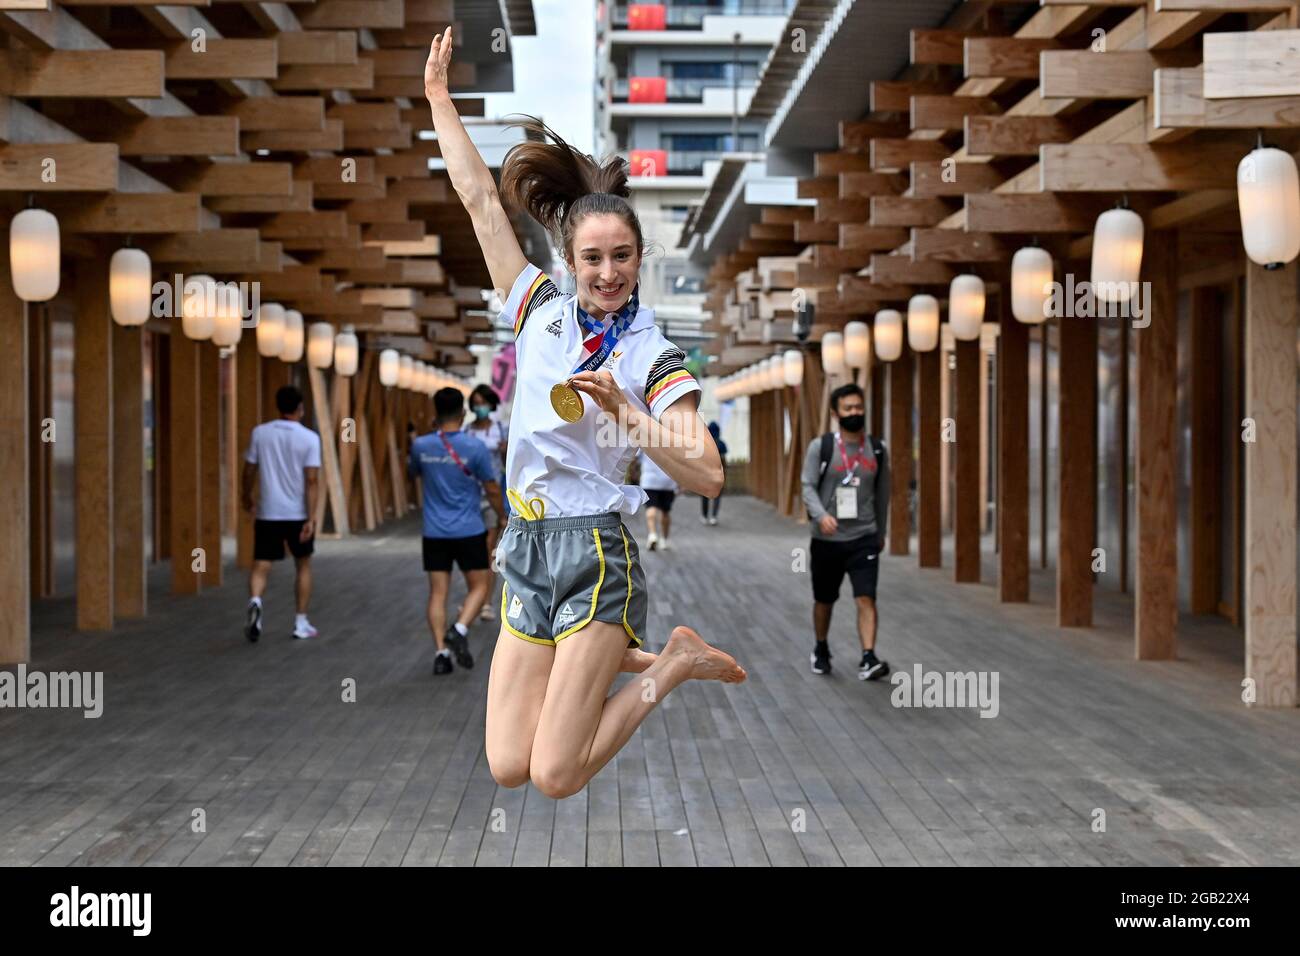 La Belge Nina Derwael pose pour la photographe avec sa médaille d'or le jour 11 des 'Jeux Olympiques de Tokyo 2020' à Tokyo, Japon, le lundi 02 août 20 Banque D'Images